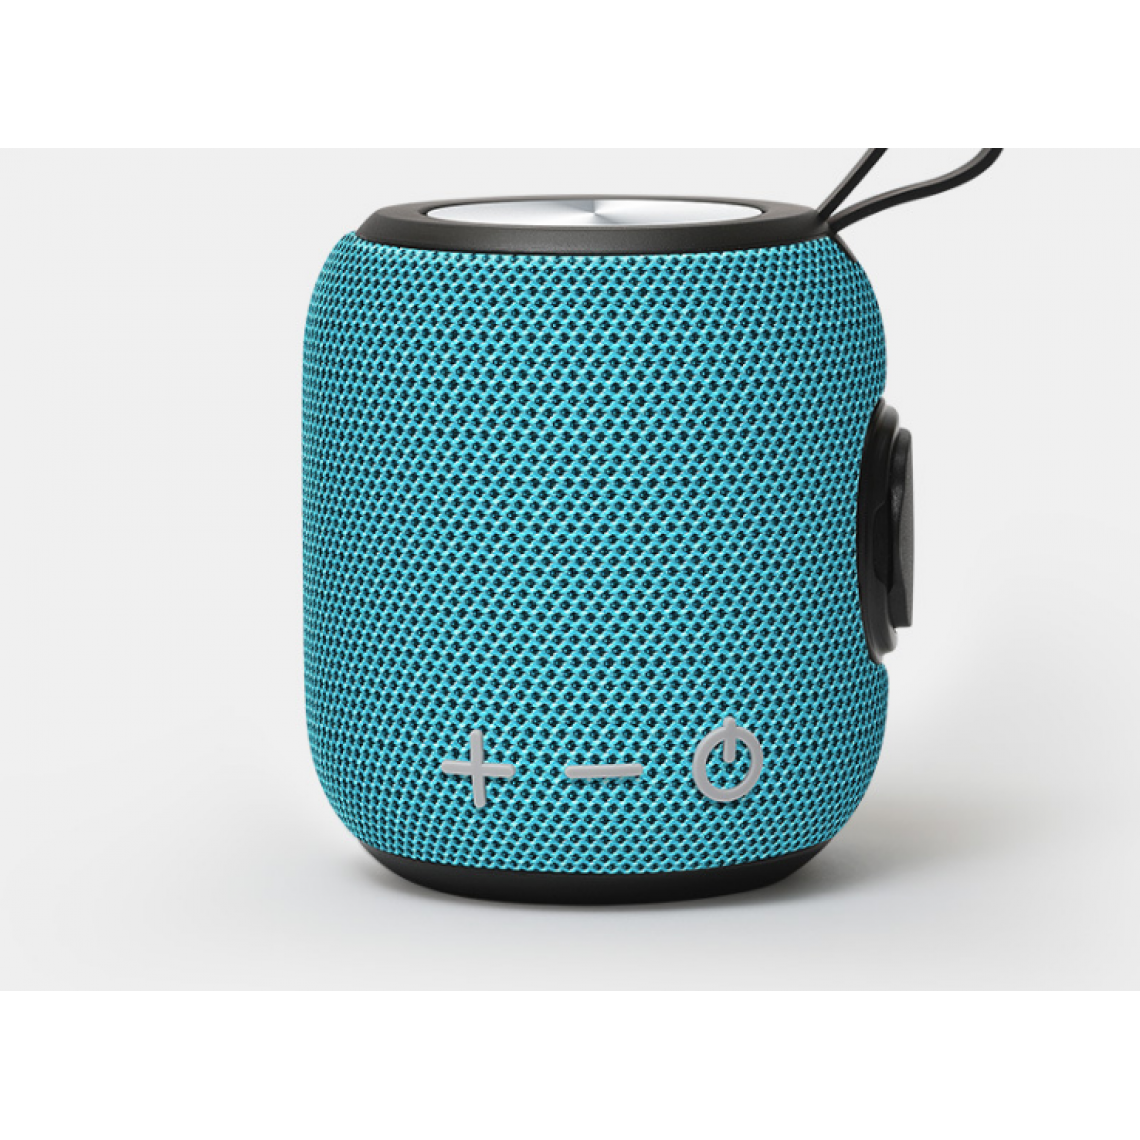 Universal - Haut-parleur Bluetooth portable en tissu extérieur 360 HD stéréo, IPX7 étanche enceinte magnétique pleine fréquence 1800 mAh | haut-parleur extérieur (bleu) - Hauts-parleurs